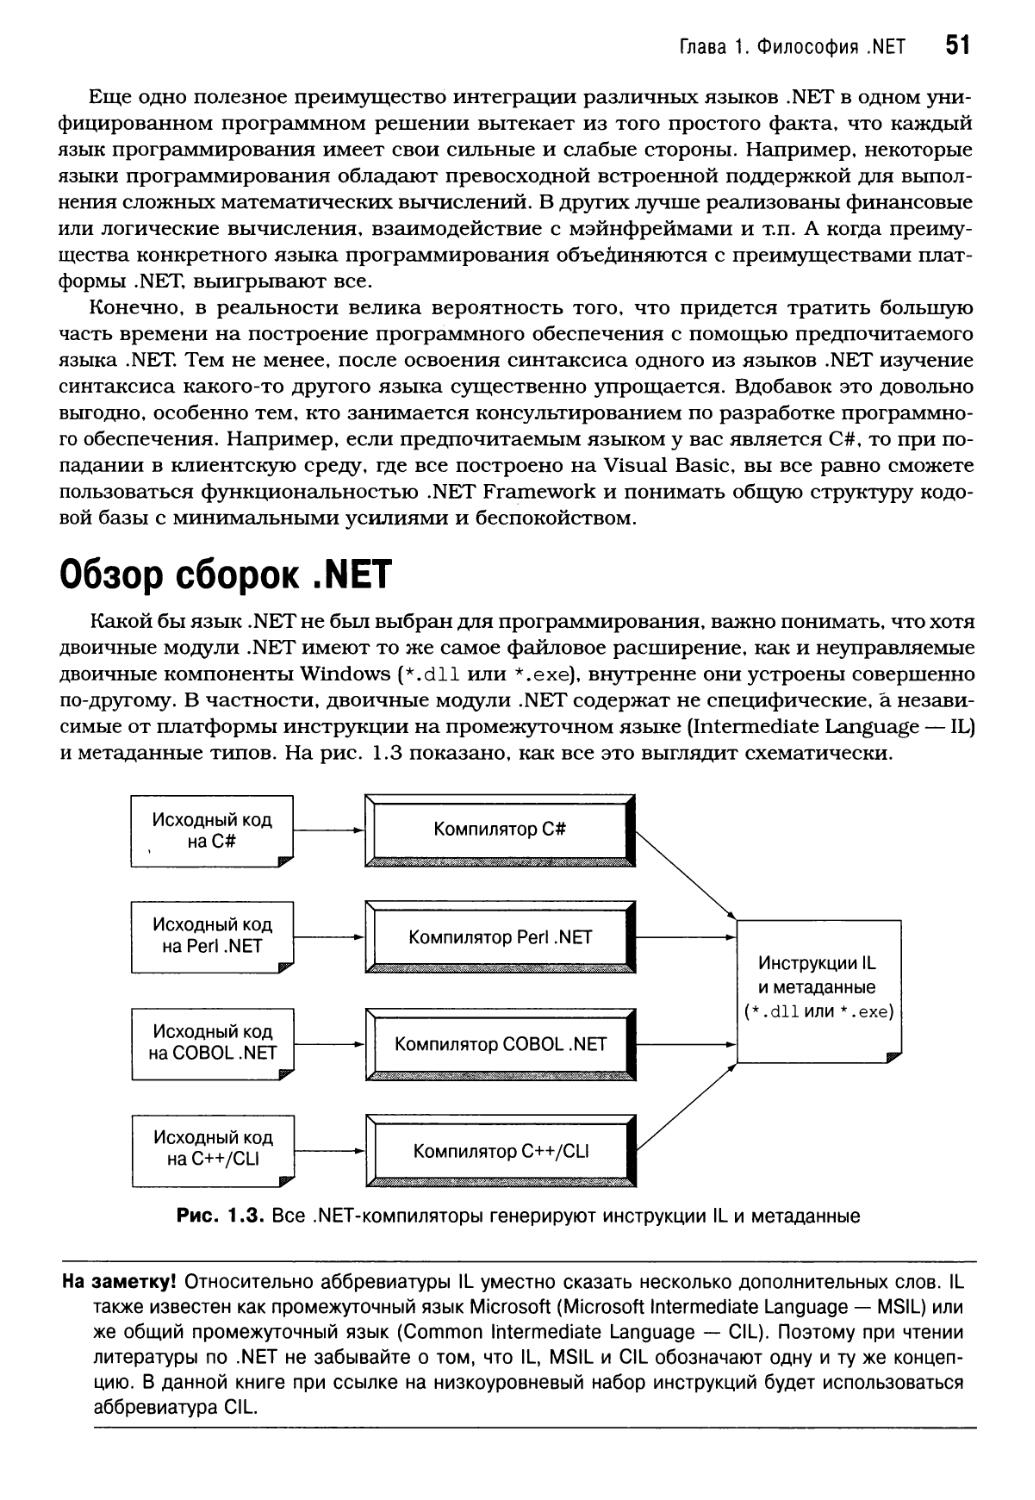 Обзор сборок .NET